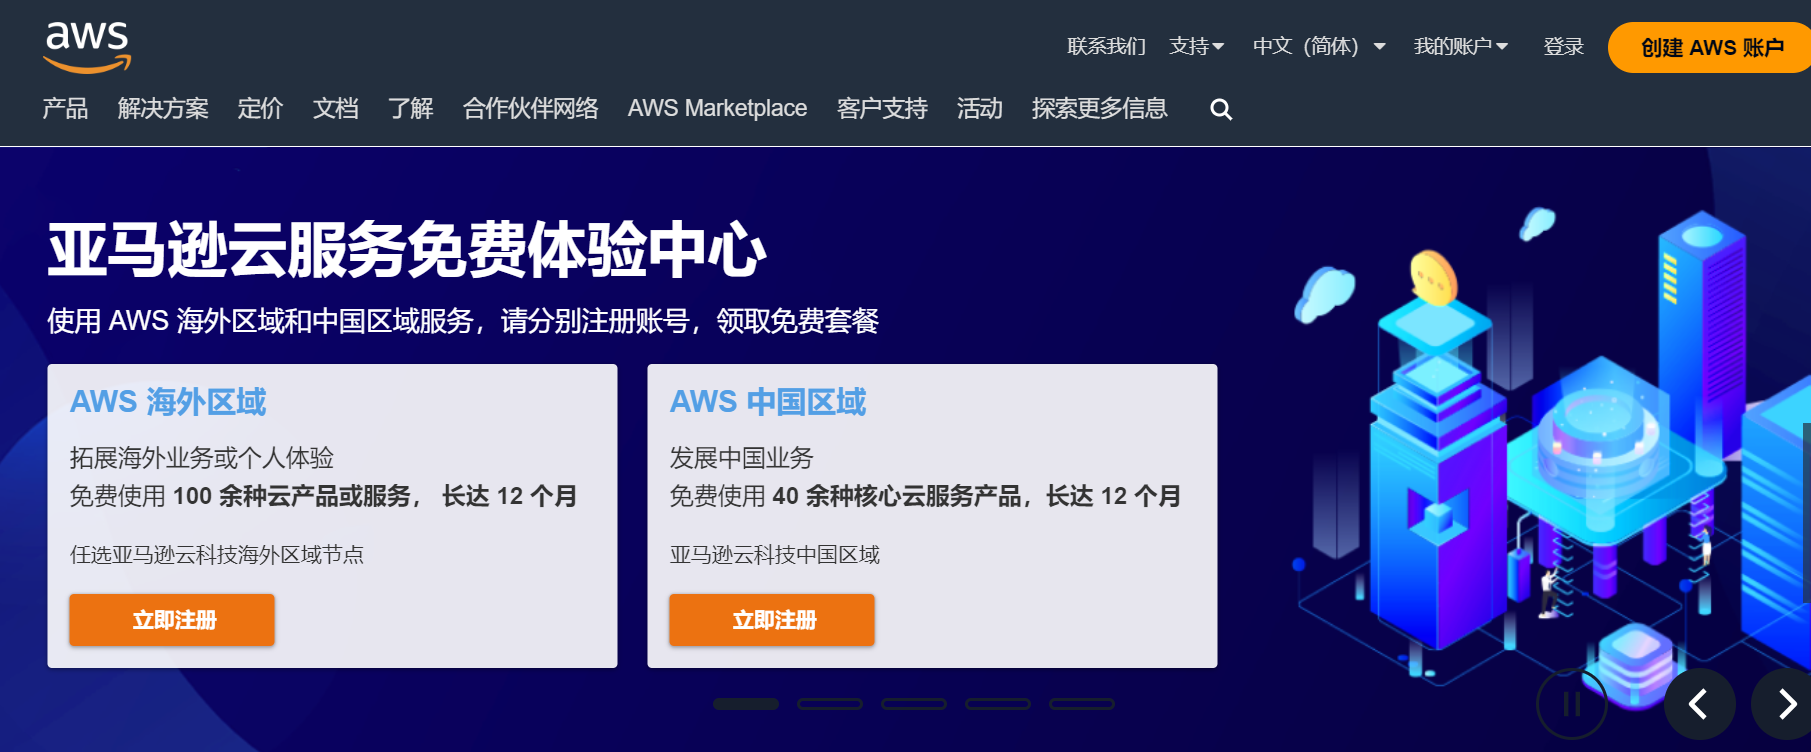 亚马逊旗下云服务AWS在周二遭遇了一次宕机